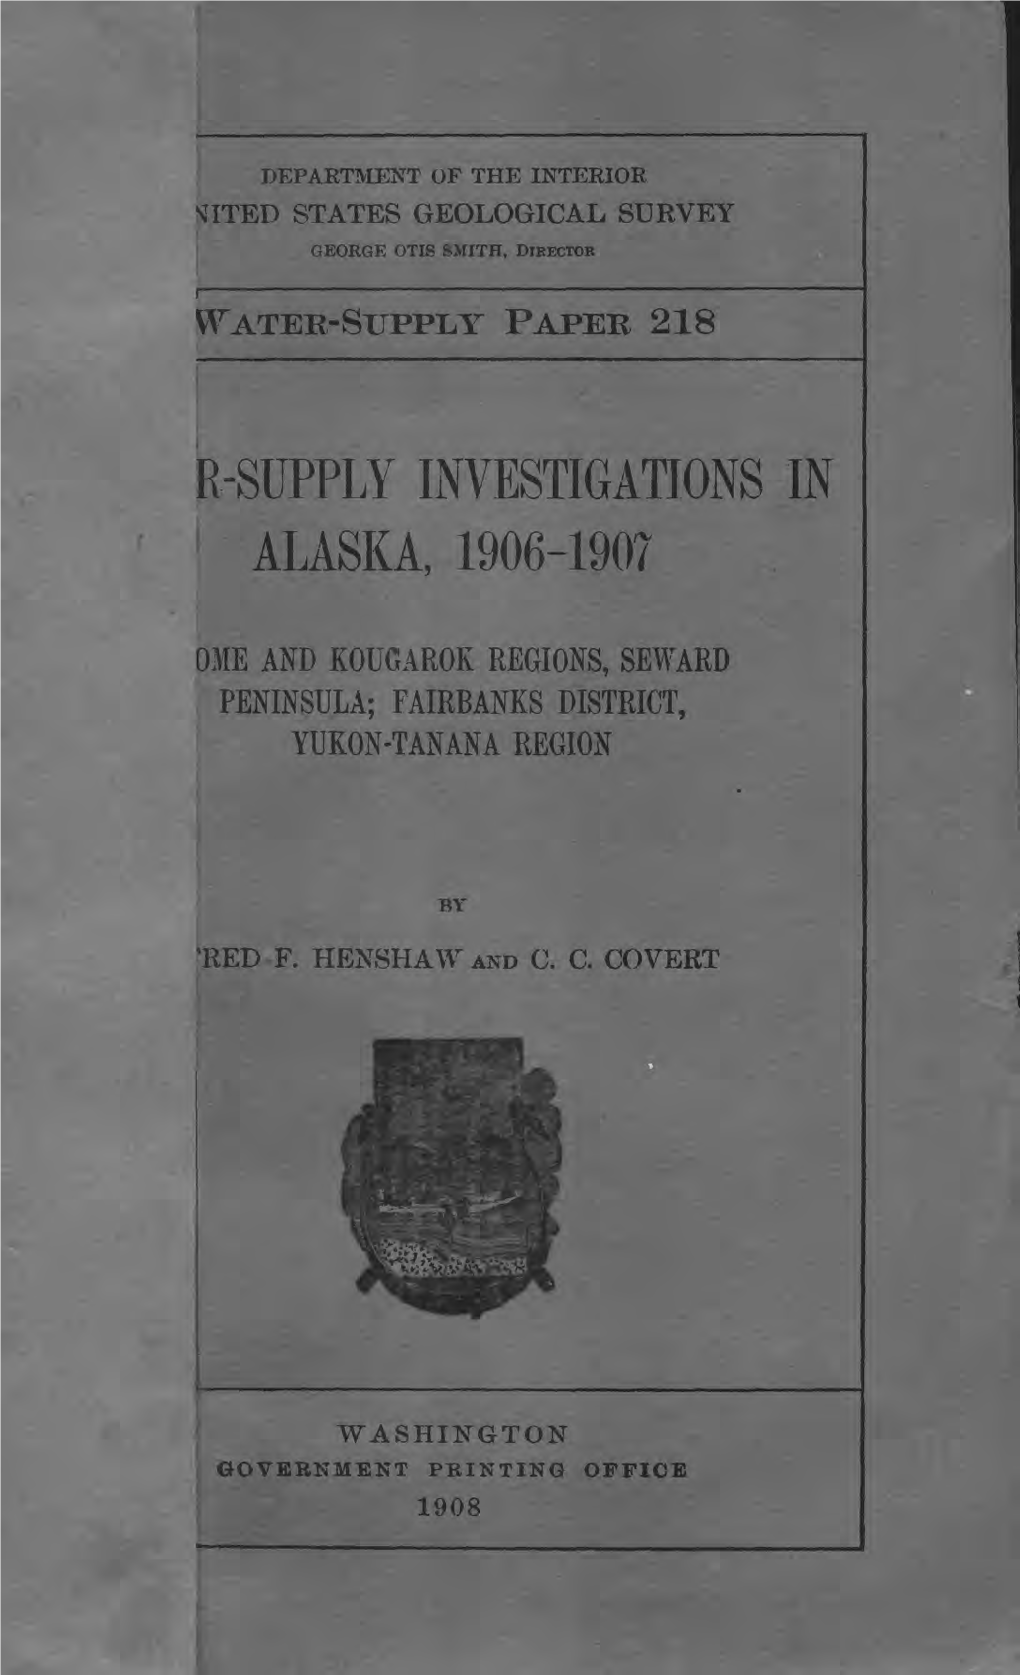 R-Supply Lwestigations in Alaska, 1906-1907